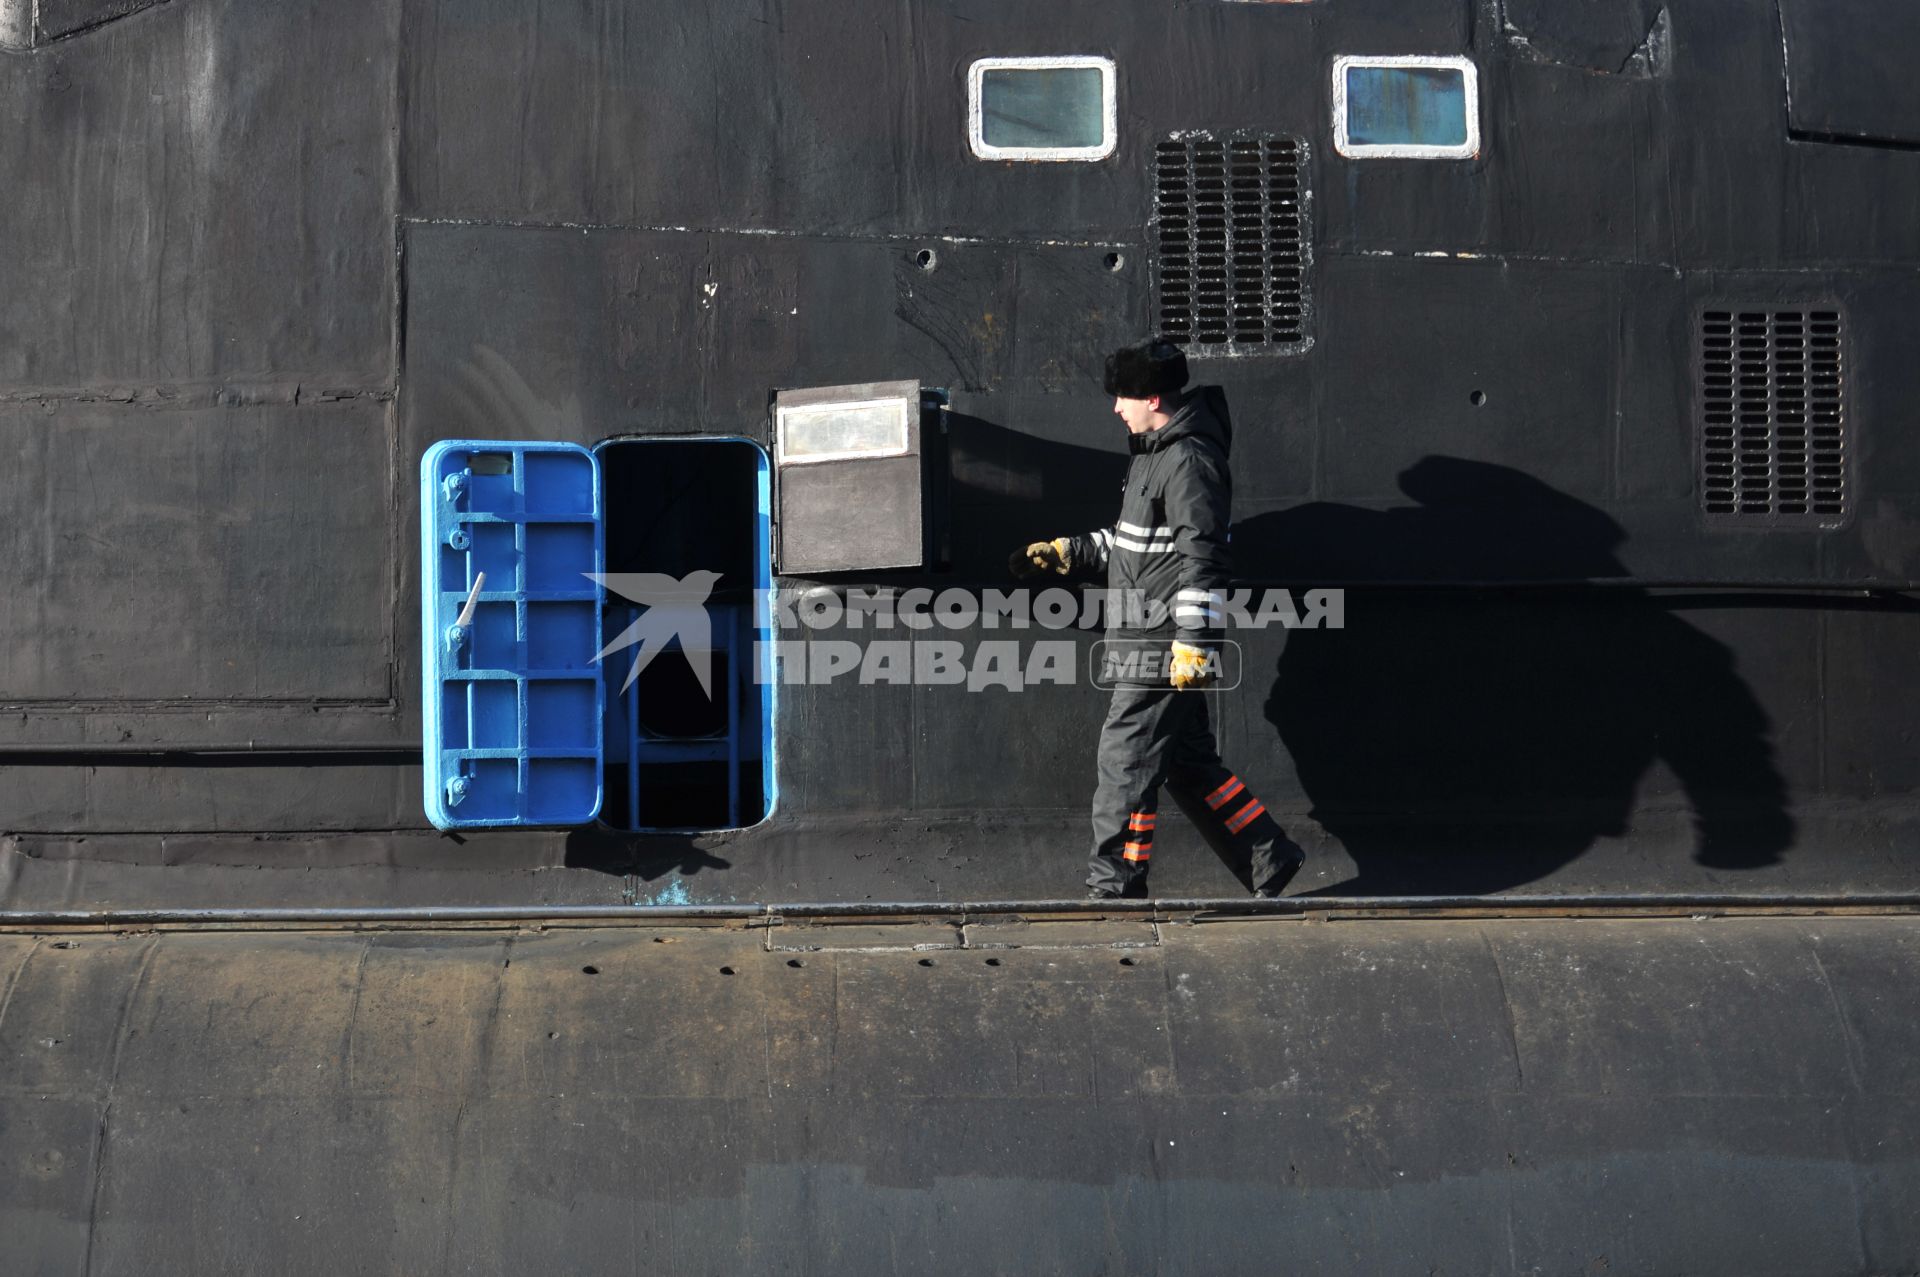 Североморск. Военно-морская база Северного флота России. Военнослужащий на атомной подводной лодке Б-138 `Обнинск` в порту.